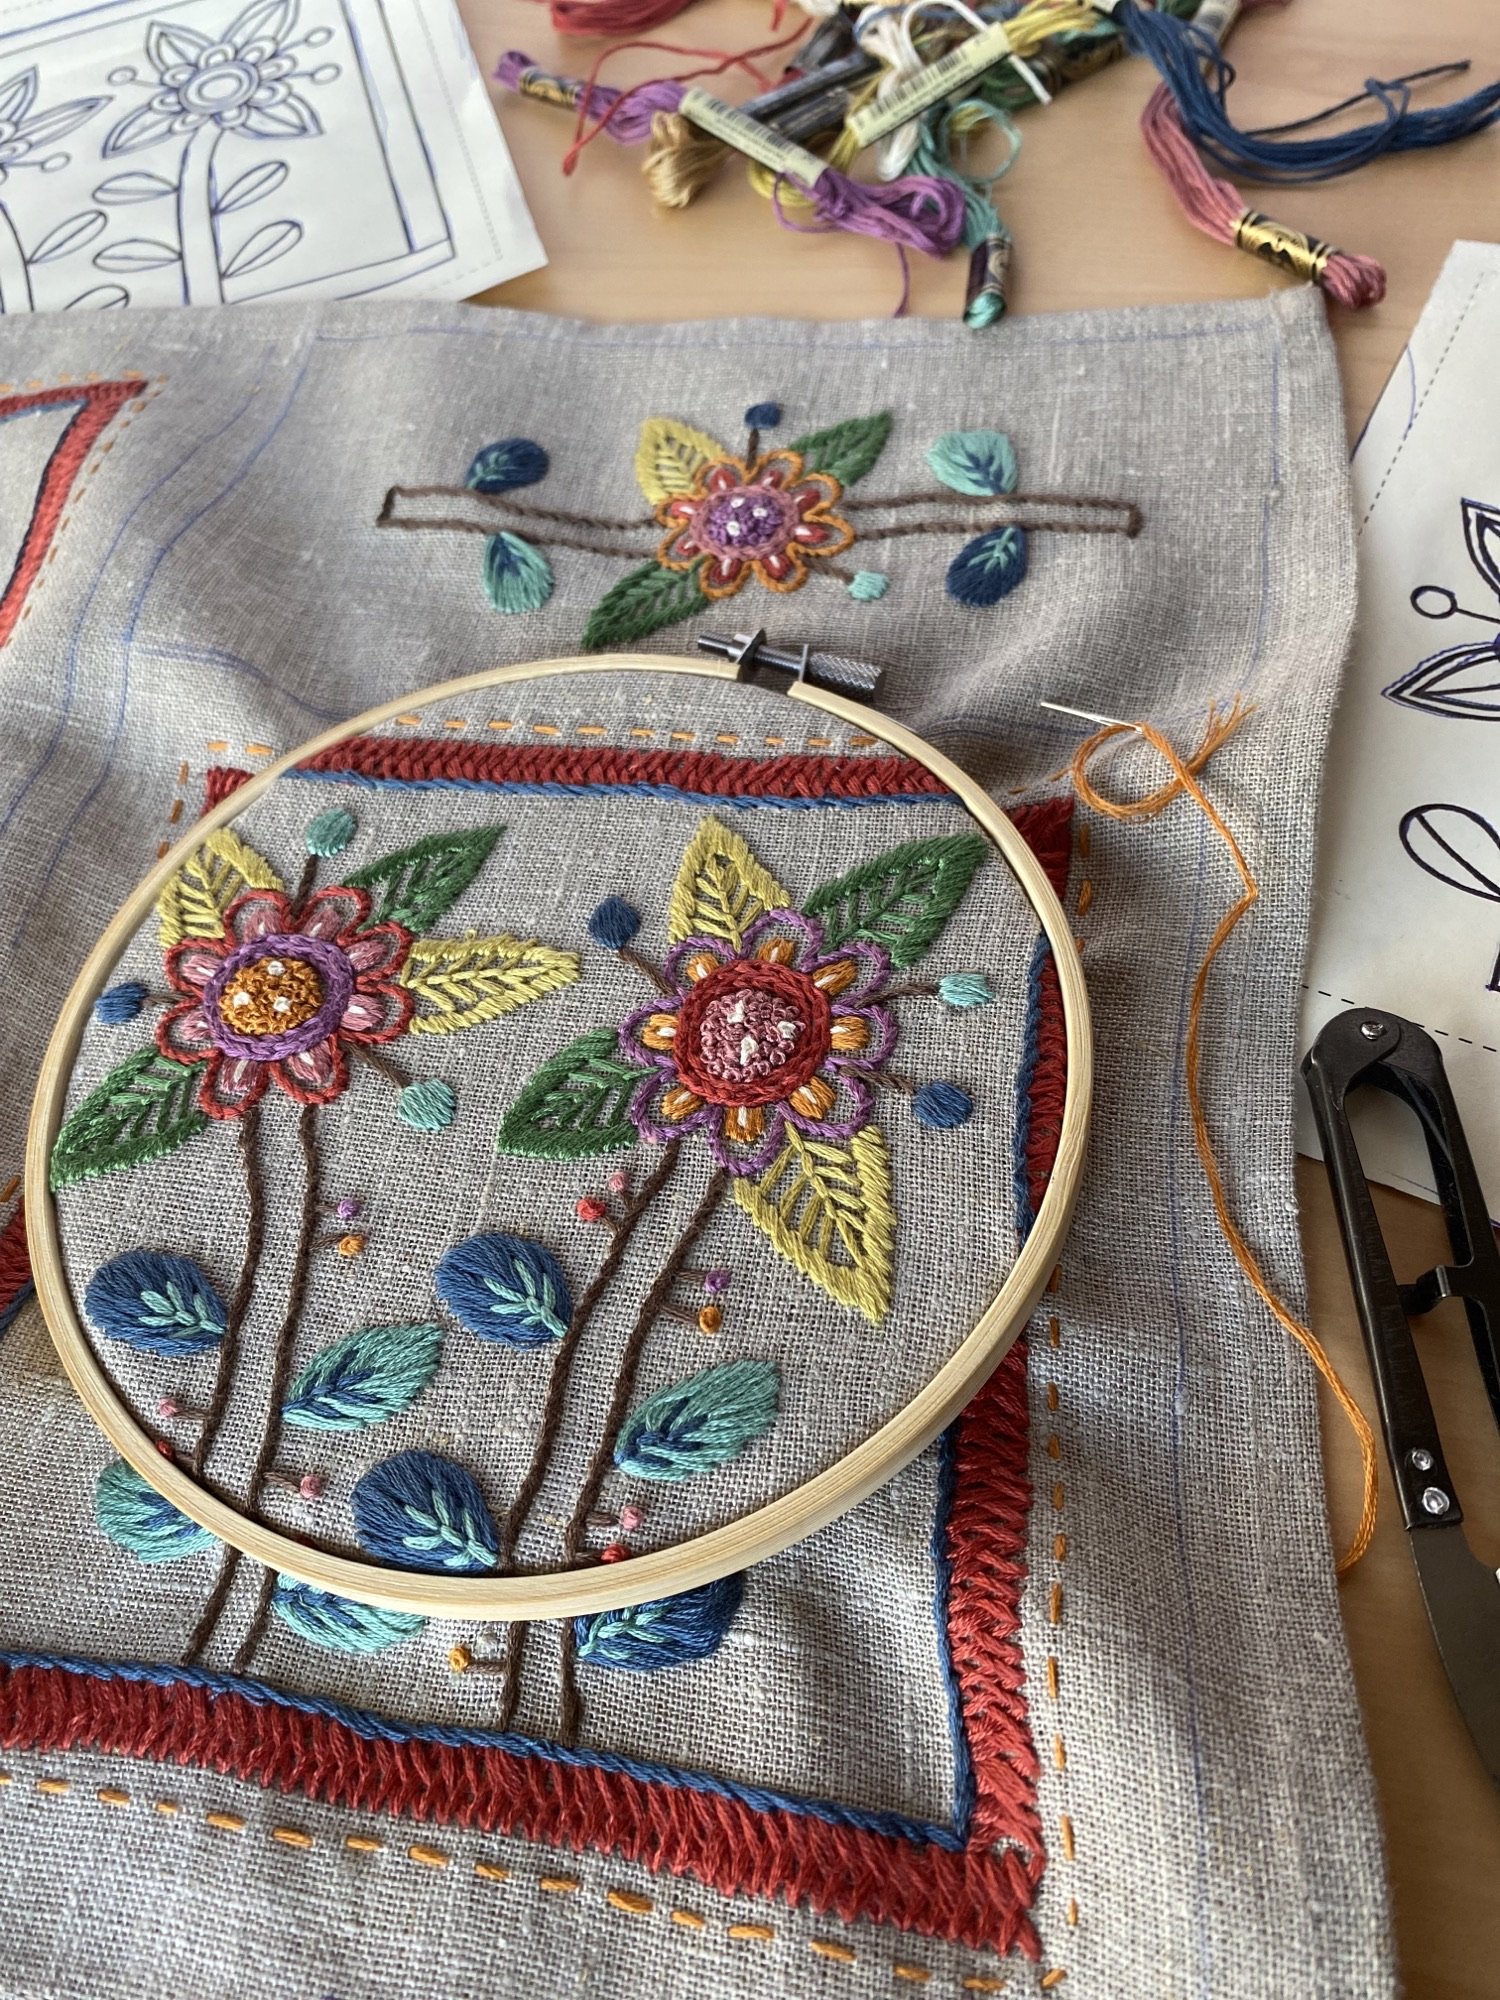 Kasia embroidery colour 3.jpeg